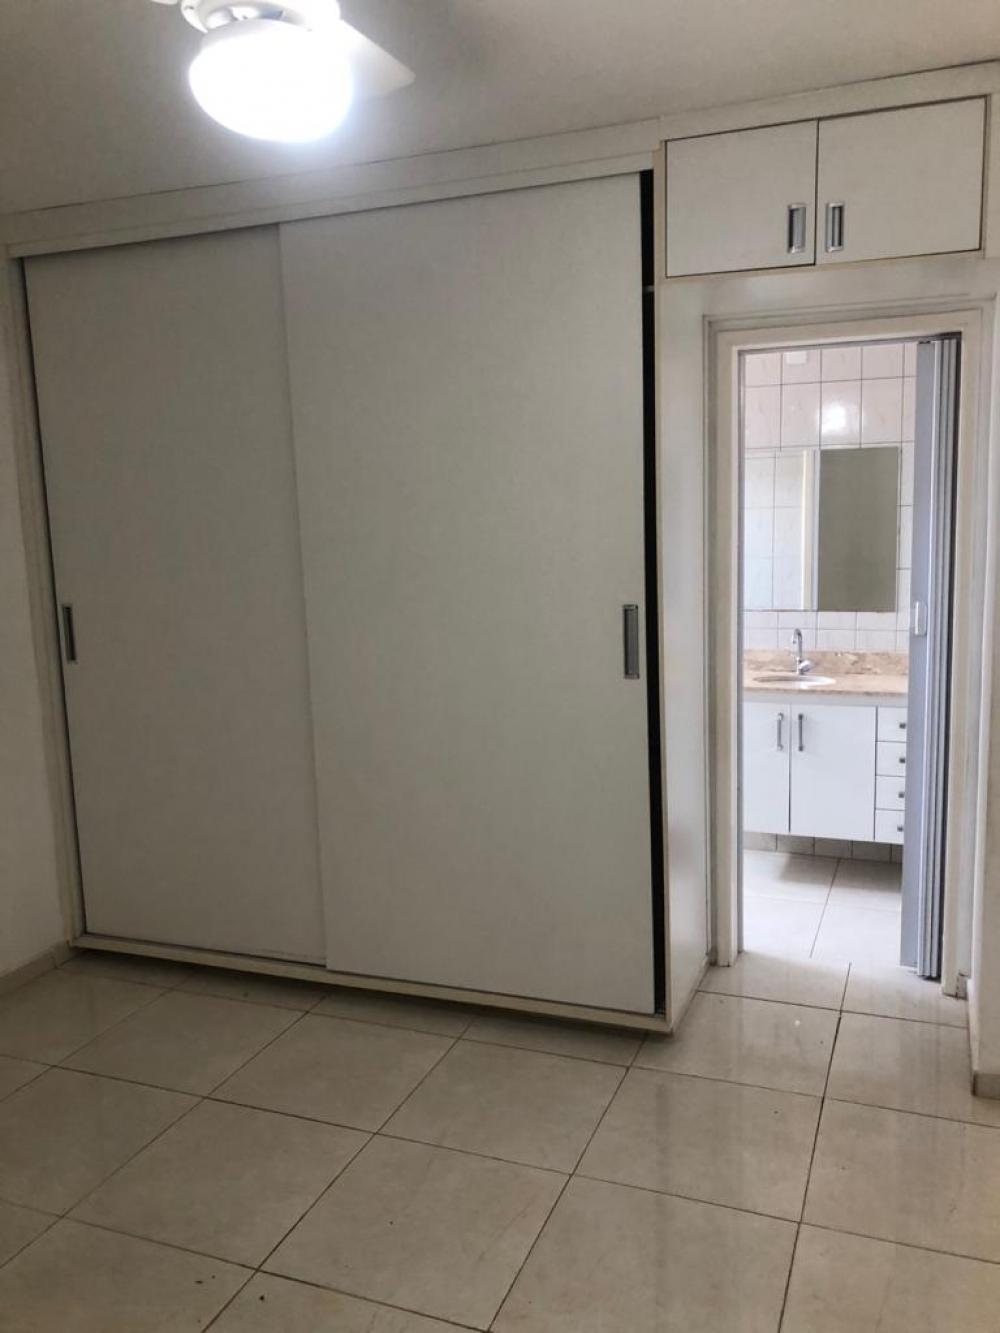 Alugar Apartamento / Cobertura em São José do Rio Preto R$ 1.400,00 - Foto 6